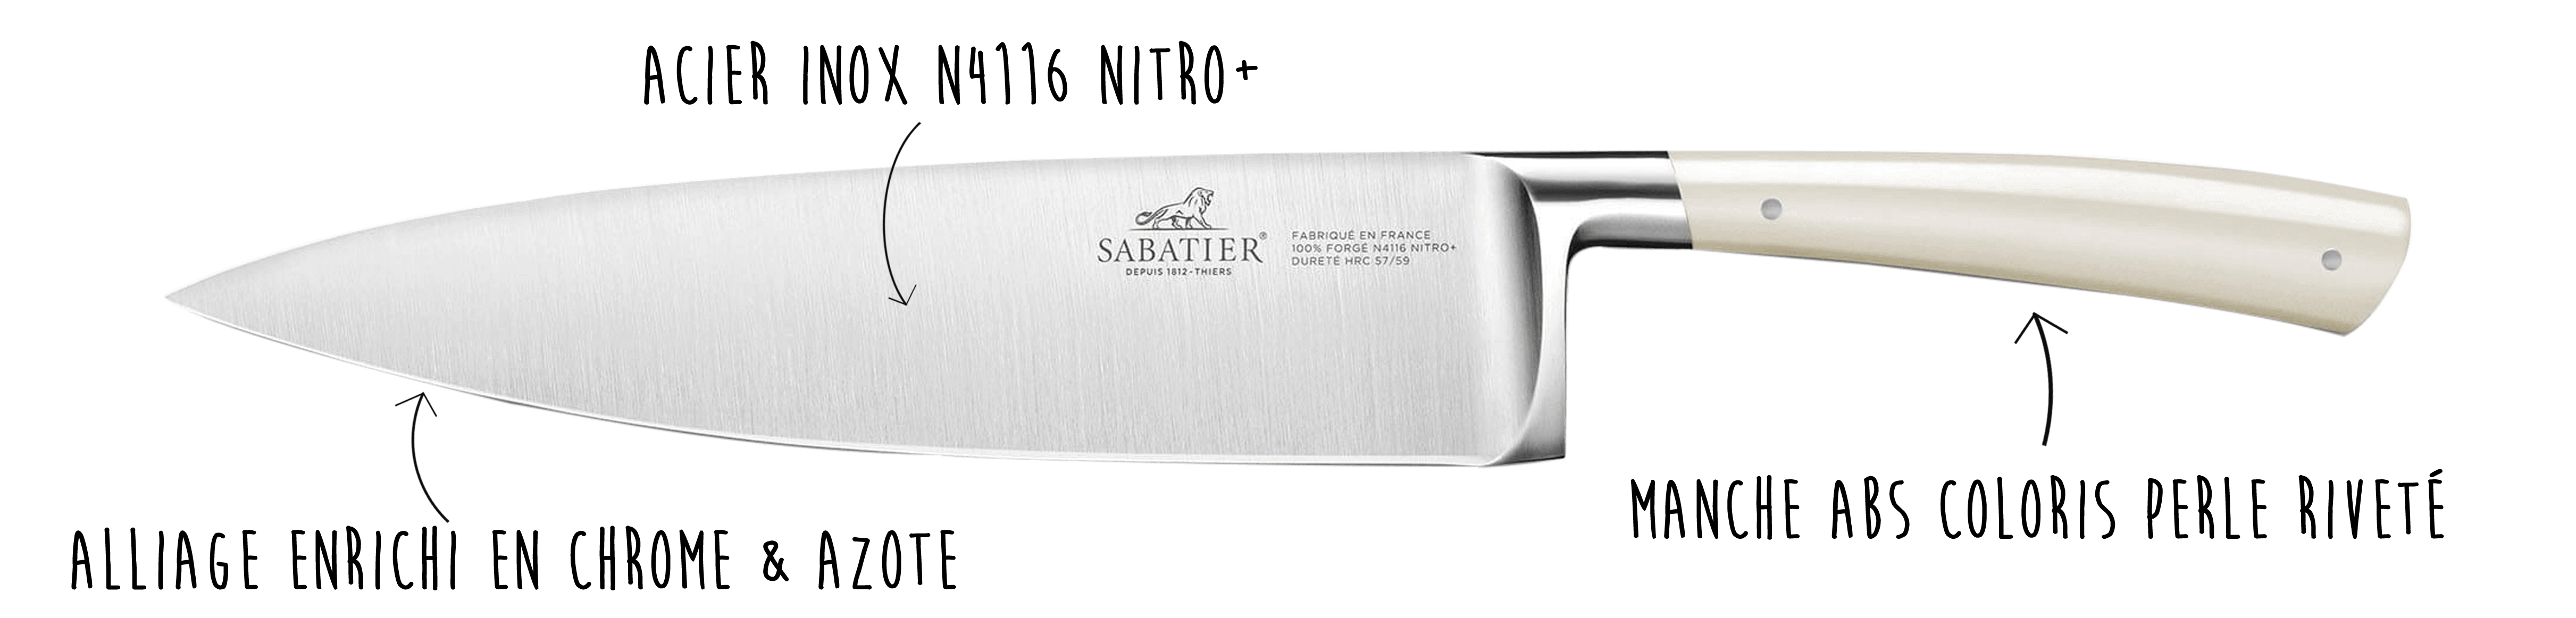 Découvrez le couteau Sabatier ici